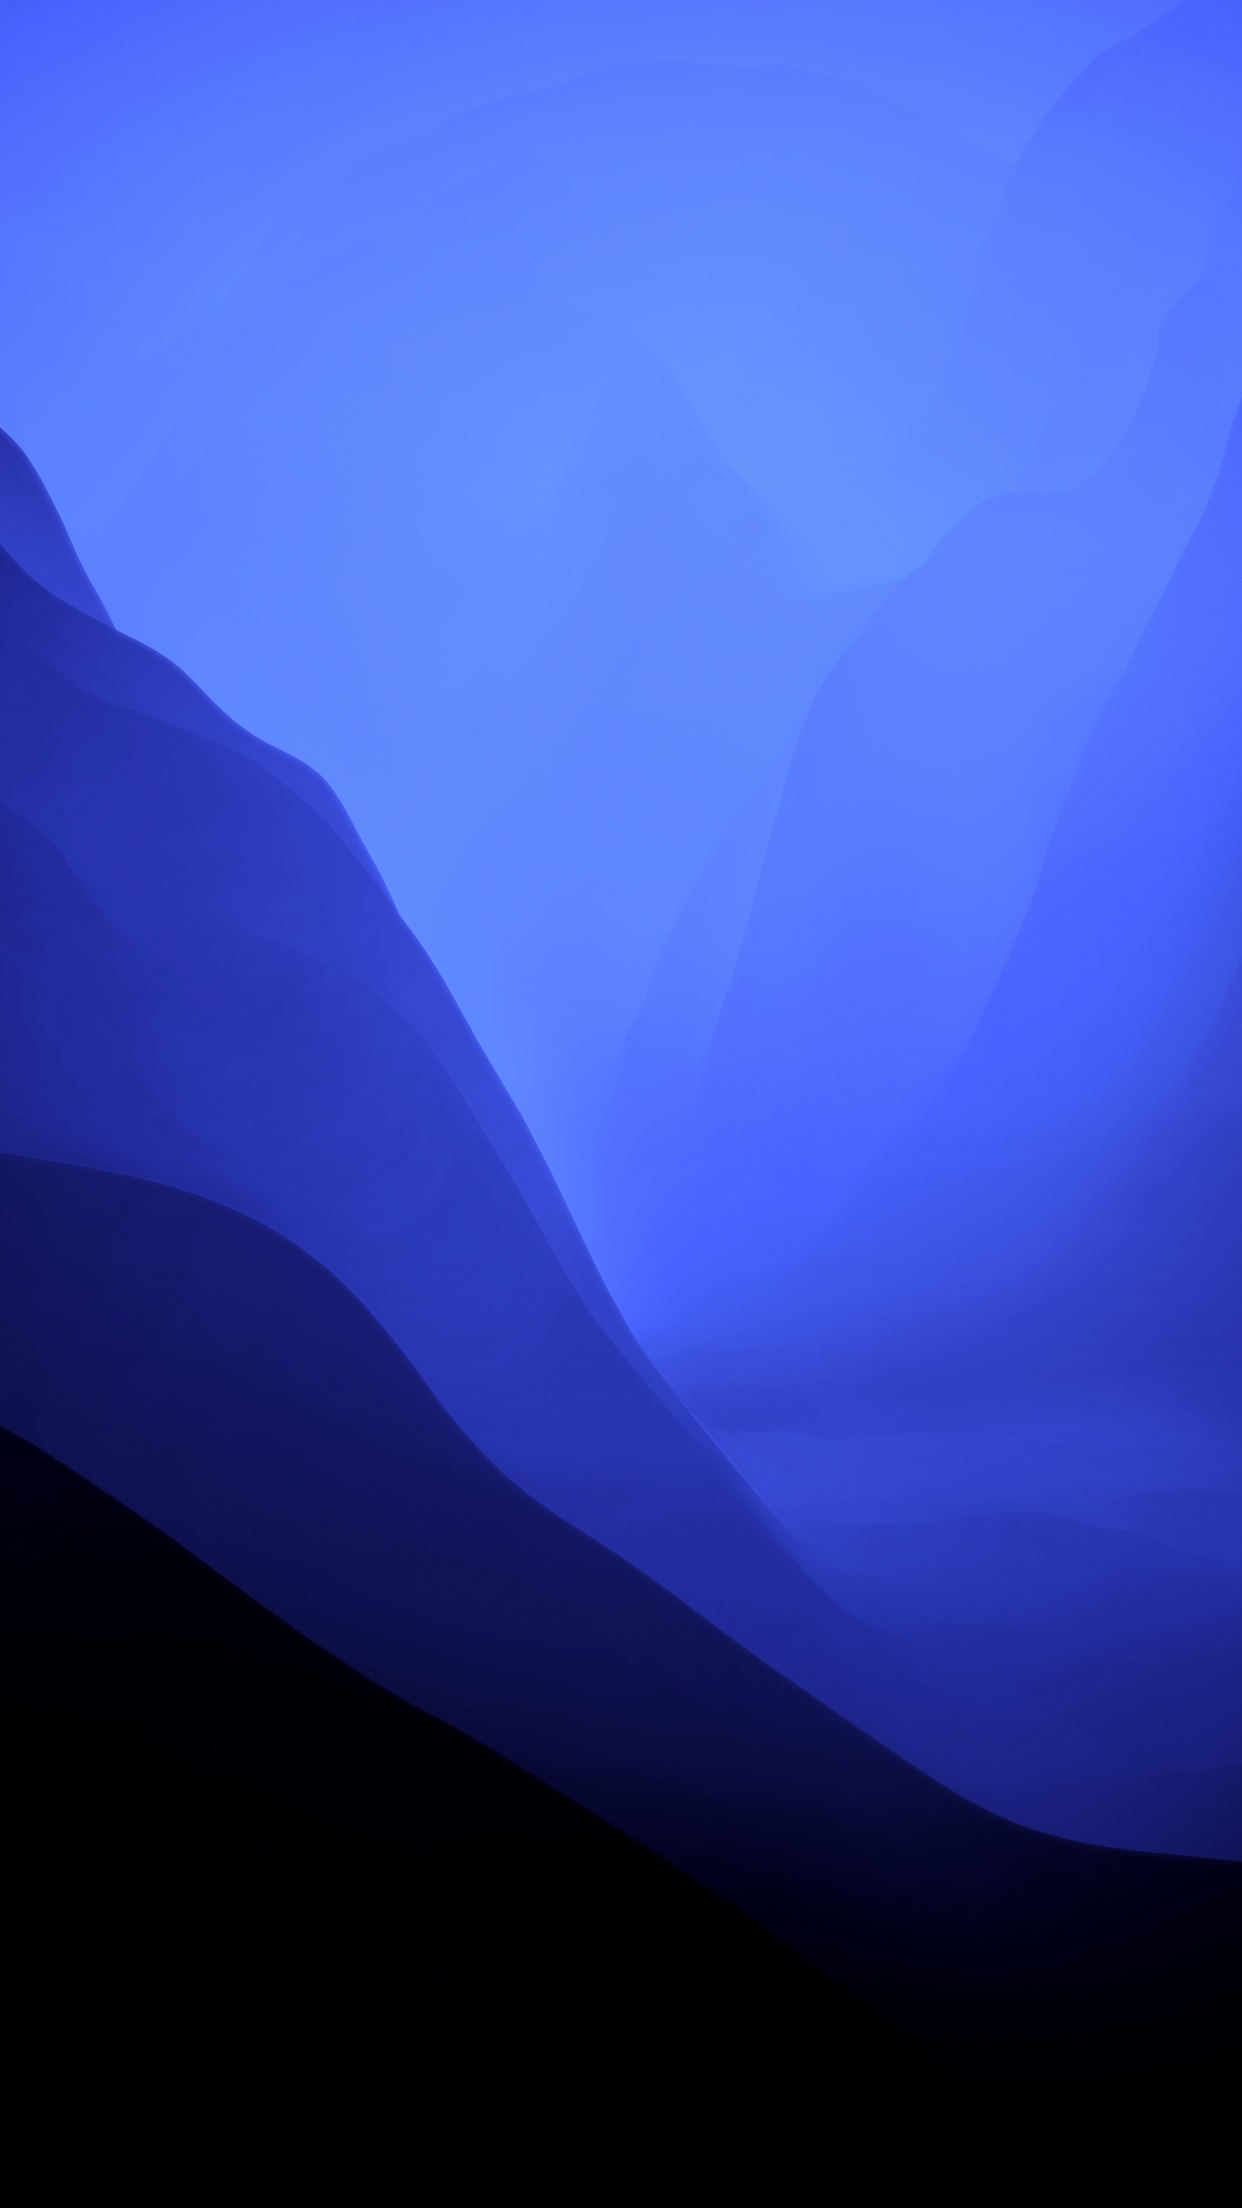 Hình nền macOS Monterey chế độ tối: Hãy cùng tận hưởng đêm thanh tịnh với hình nền macOS Monterey chế độ tối. Không còn màu sắc chói lóa, hình nền này sử dụng màu sắc đen chủ đạo để giúp bạn thư giãn và tận hưởng khoảnh khắc yên bình nhất. Hãy tải ngay và cảm nhận sự khác biệt.